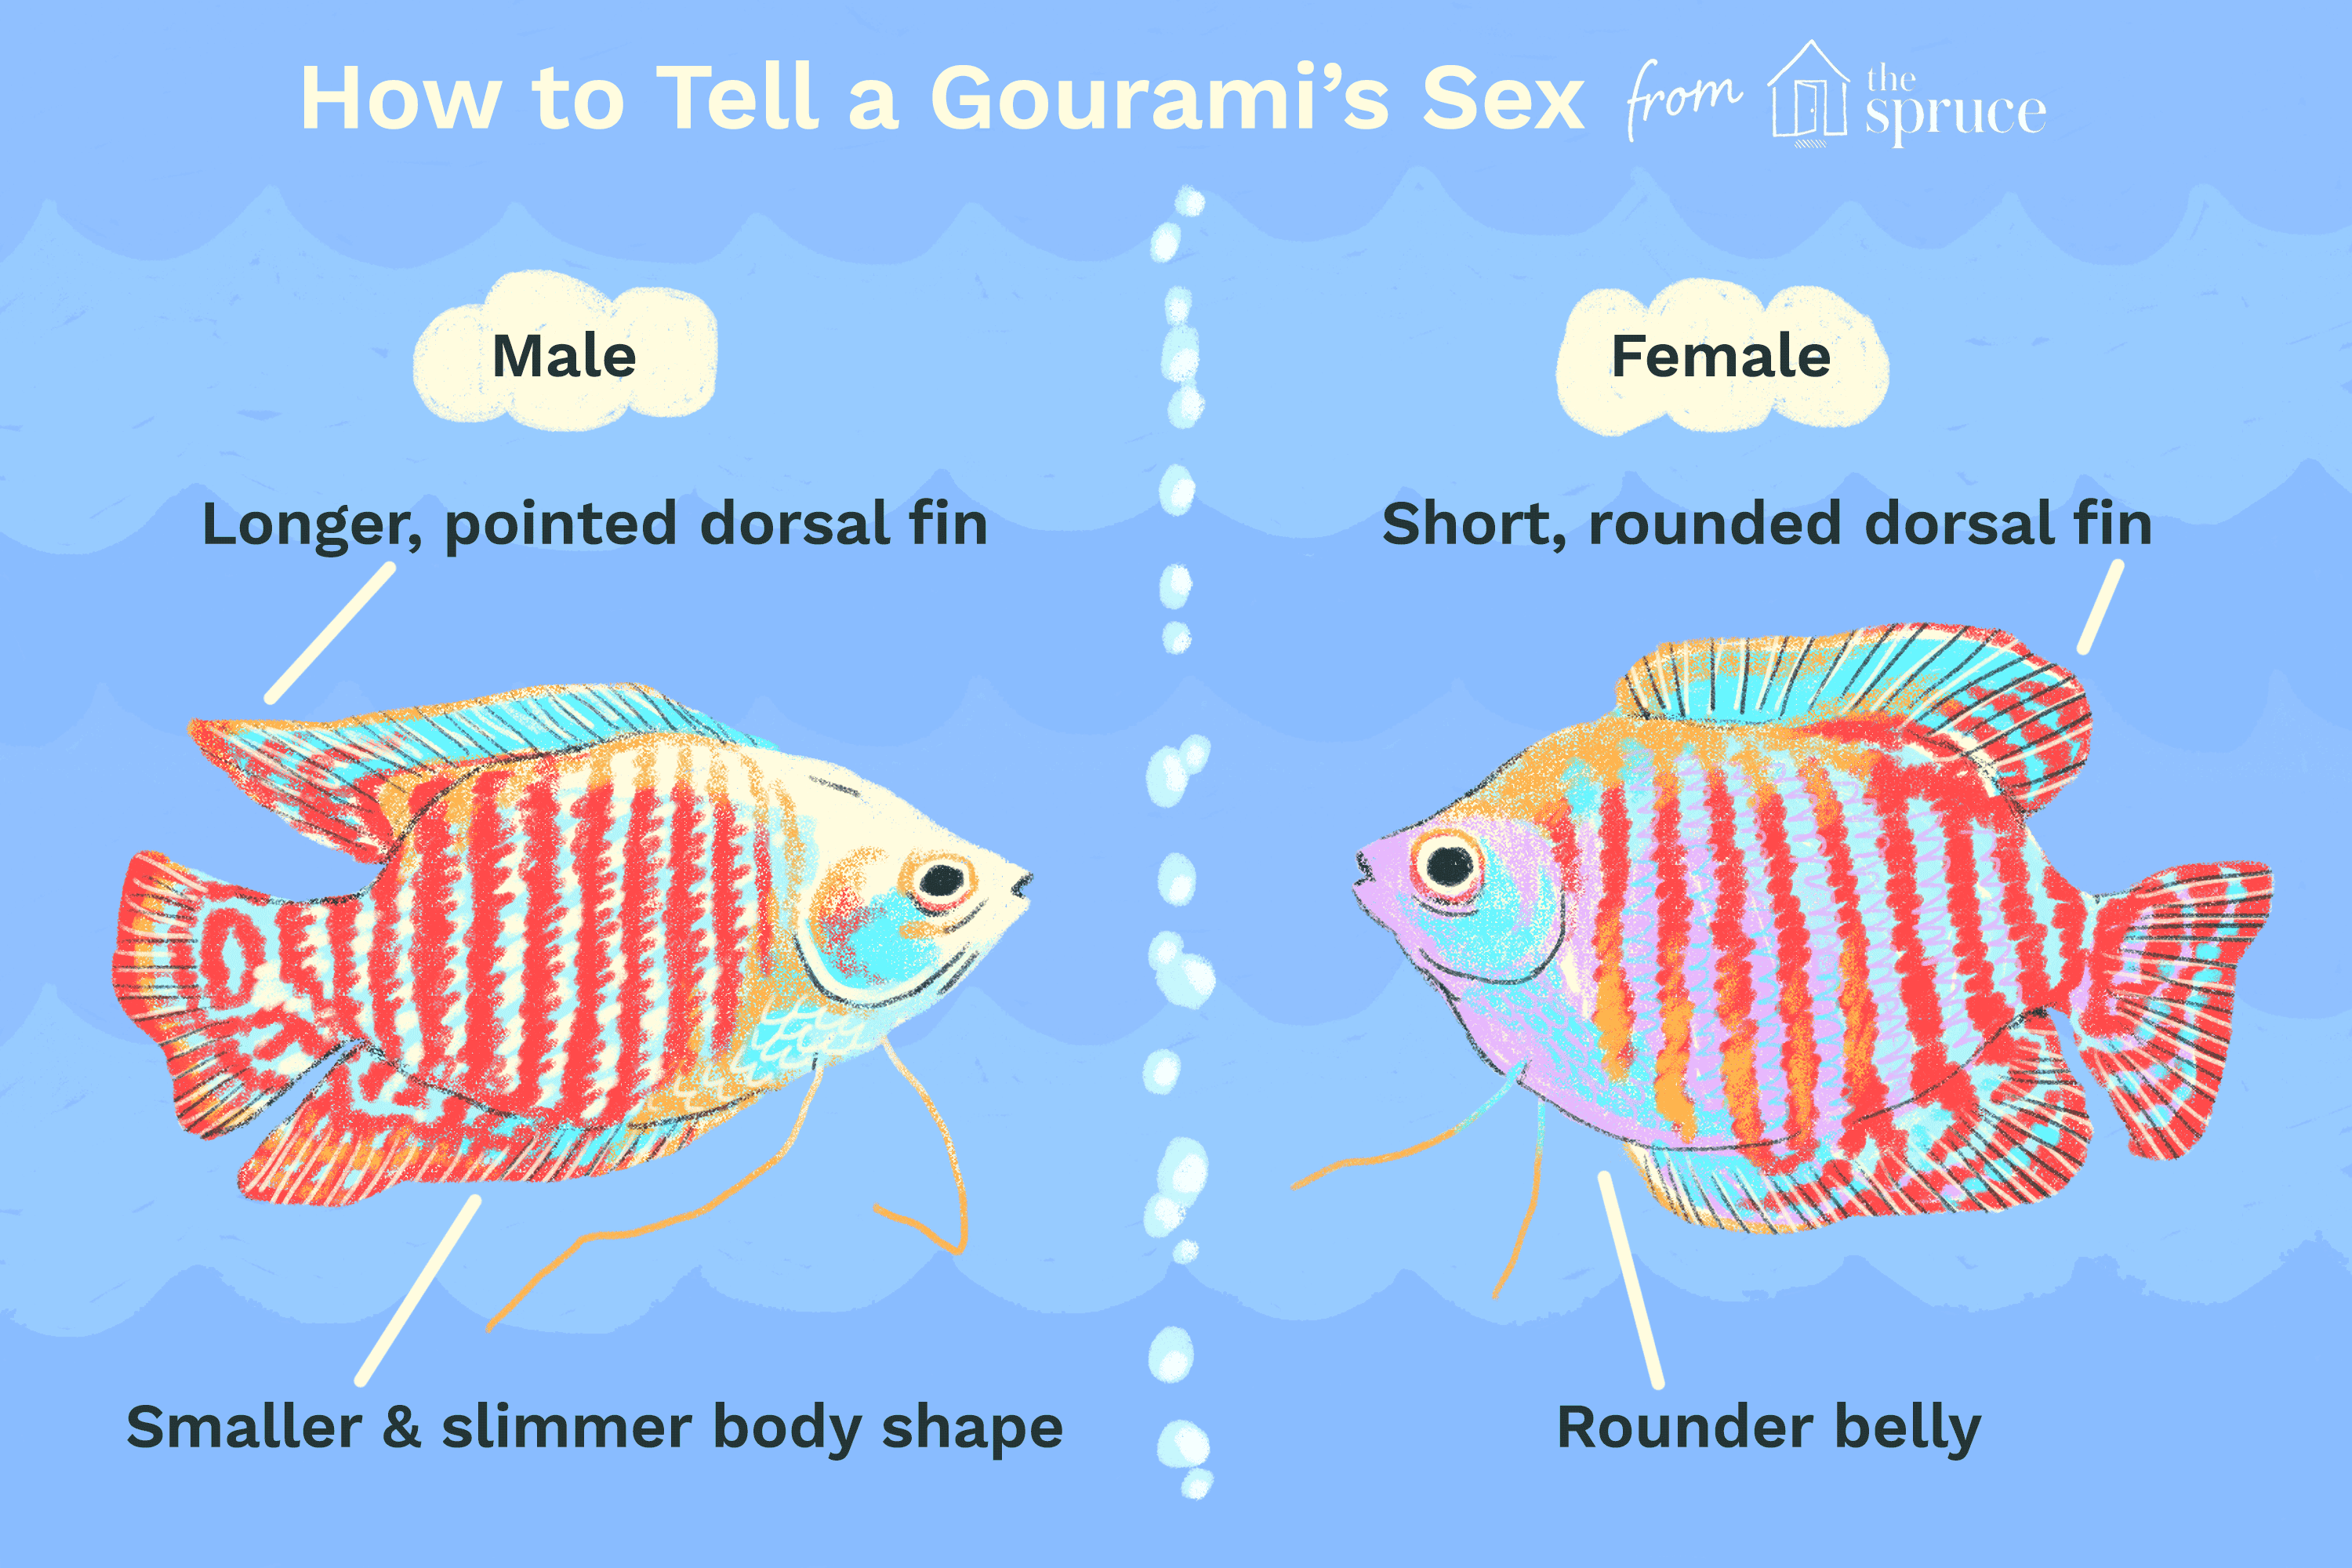 Como posso saber se um gourami é homem ou mulher?